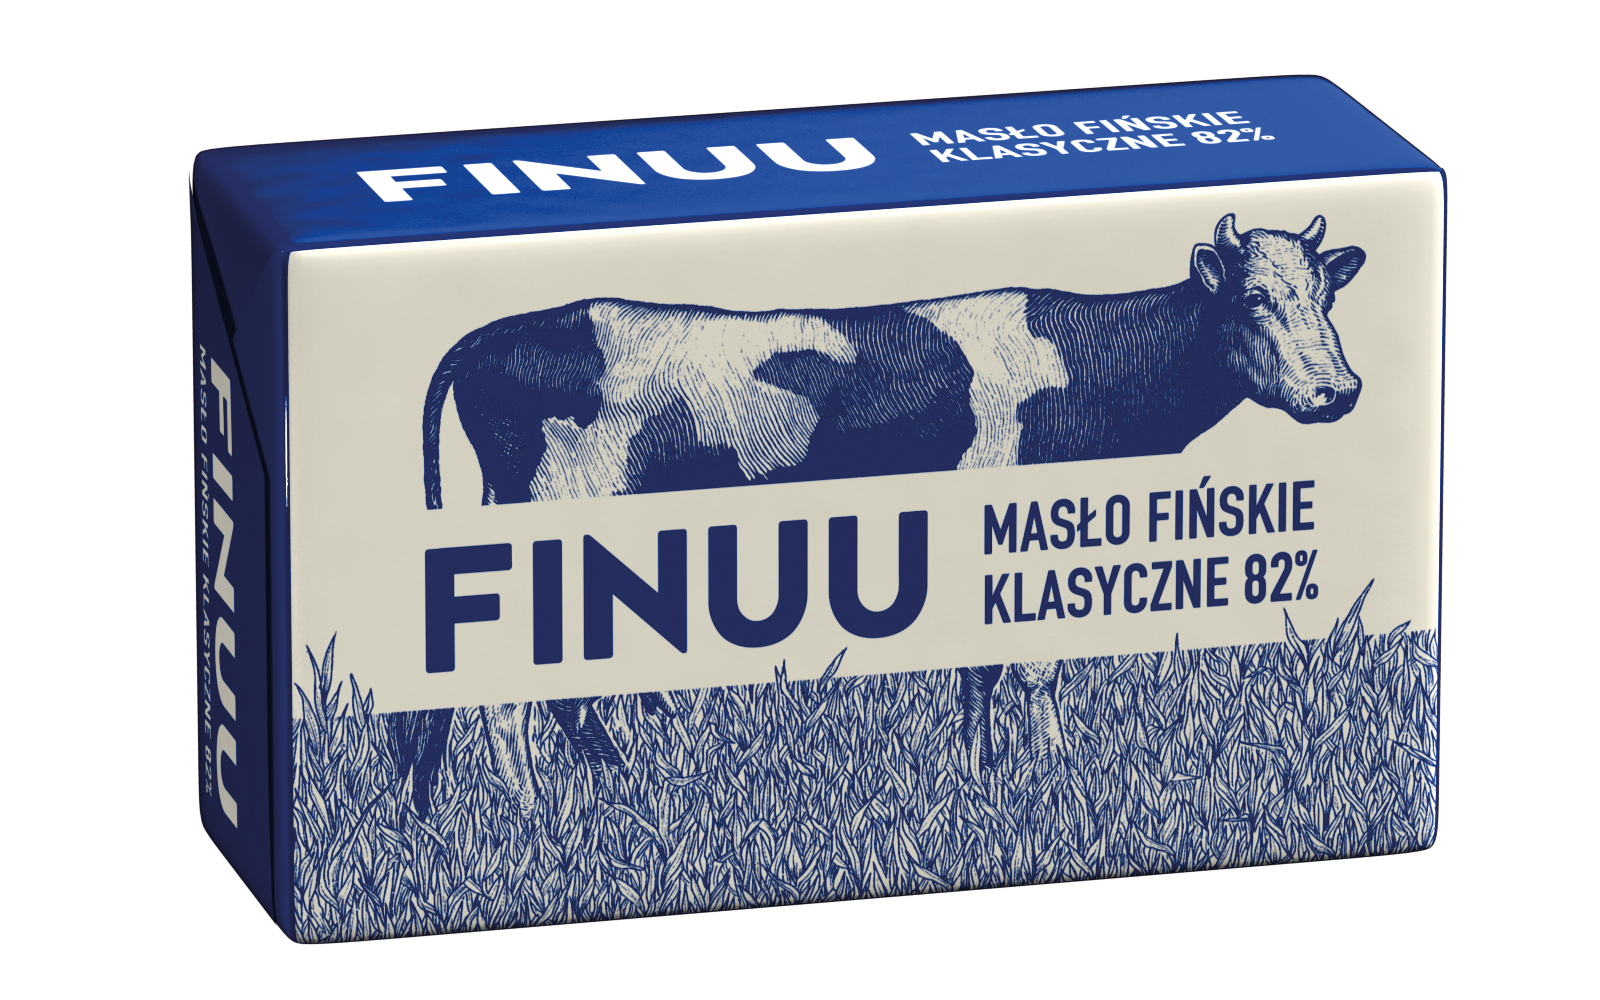 Masło fińskie Finuu już w sprzedaży!